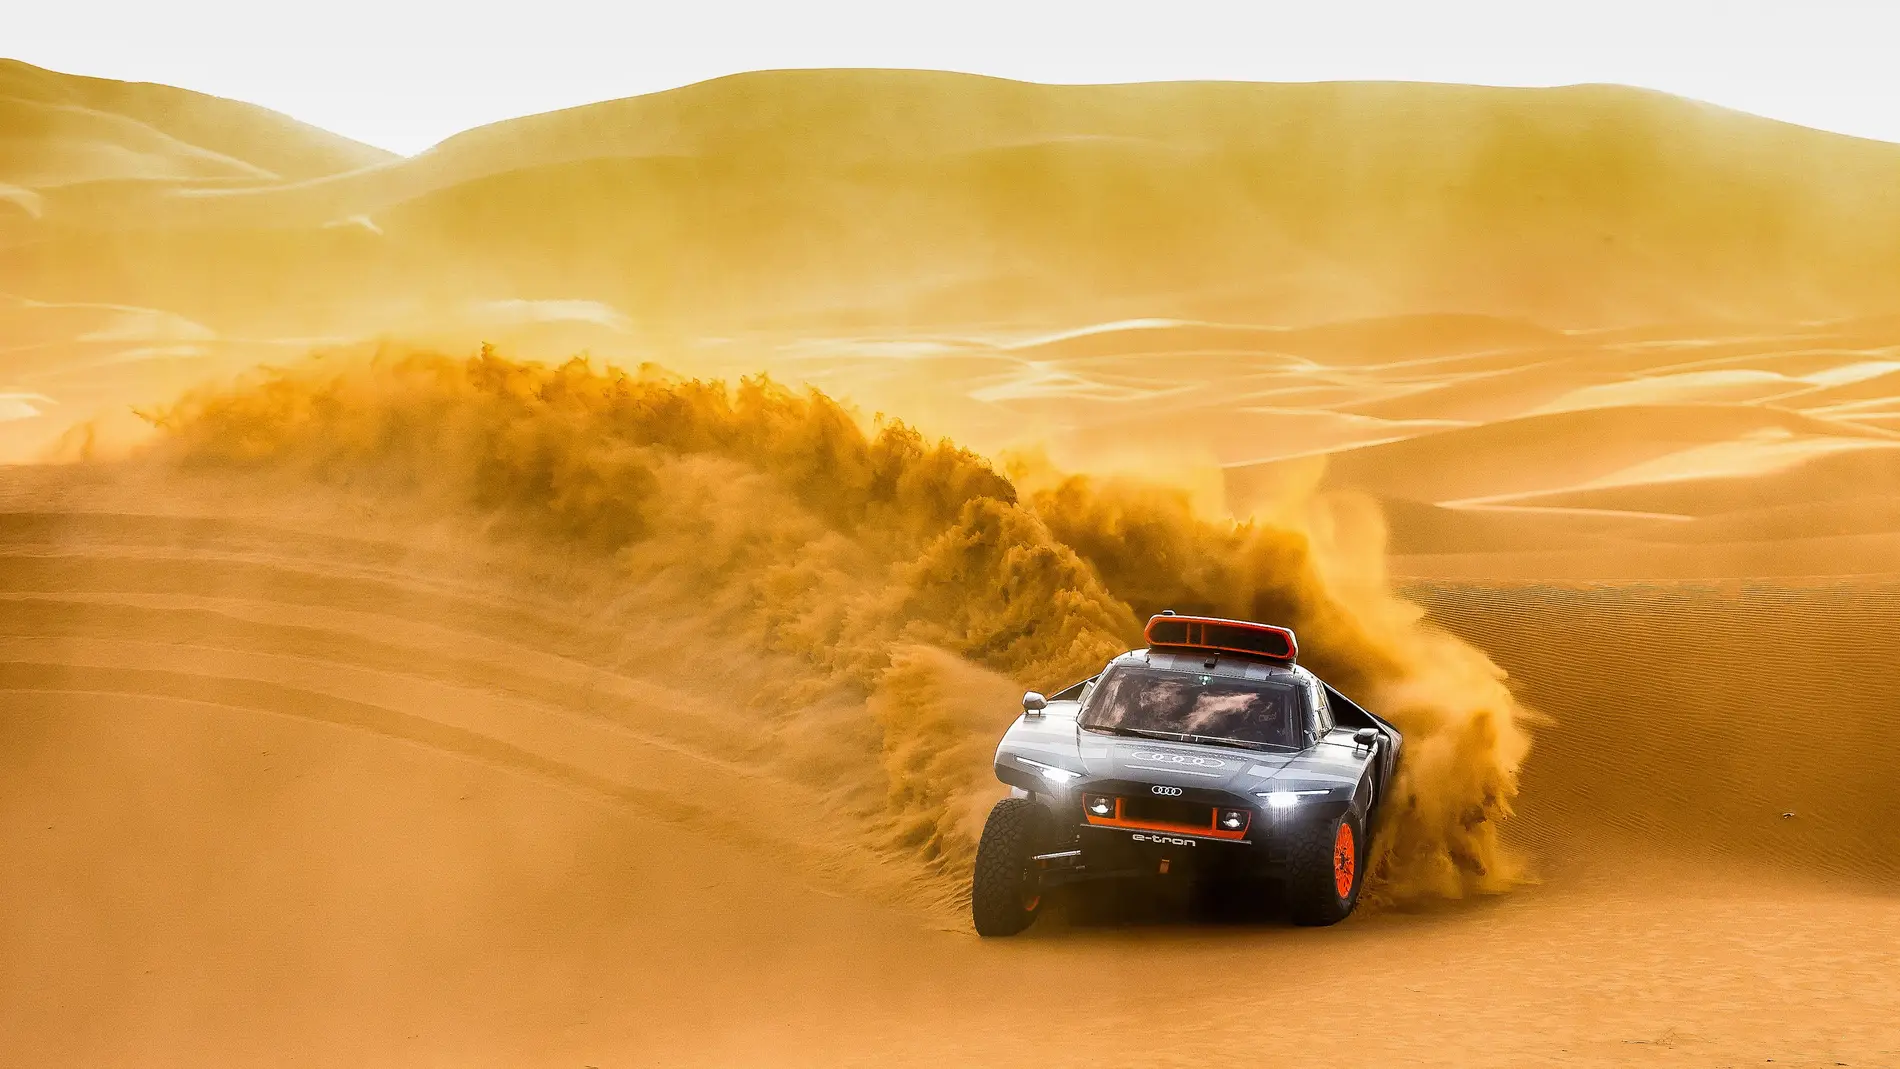 El Rally Dakar 2022 será uno de los más importantes de la historia